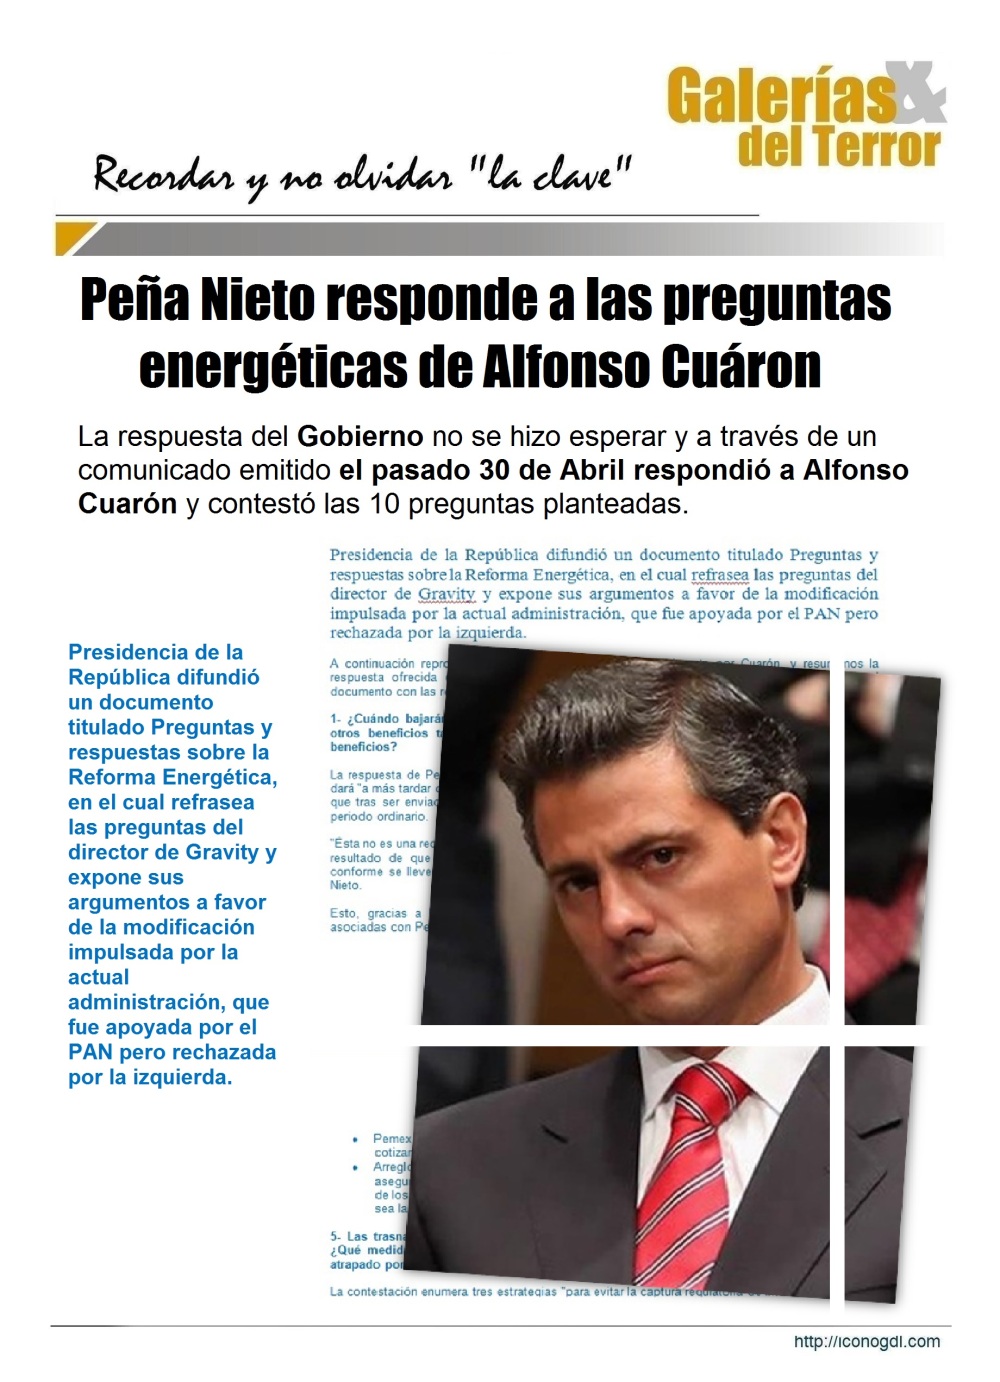 Enrique Peña Nieto contesta